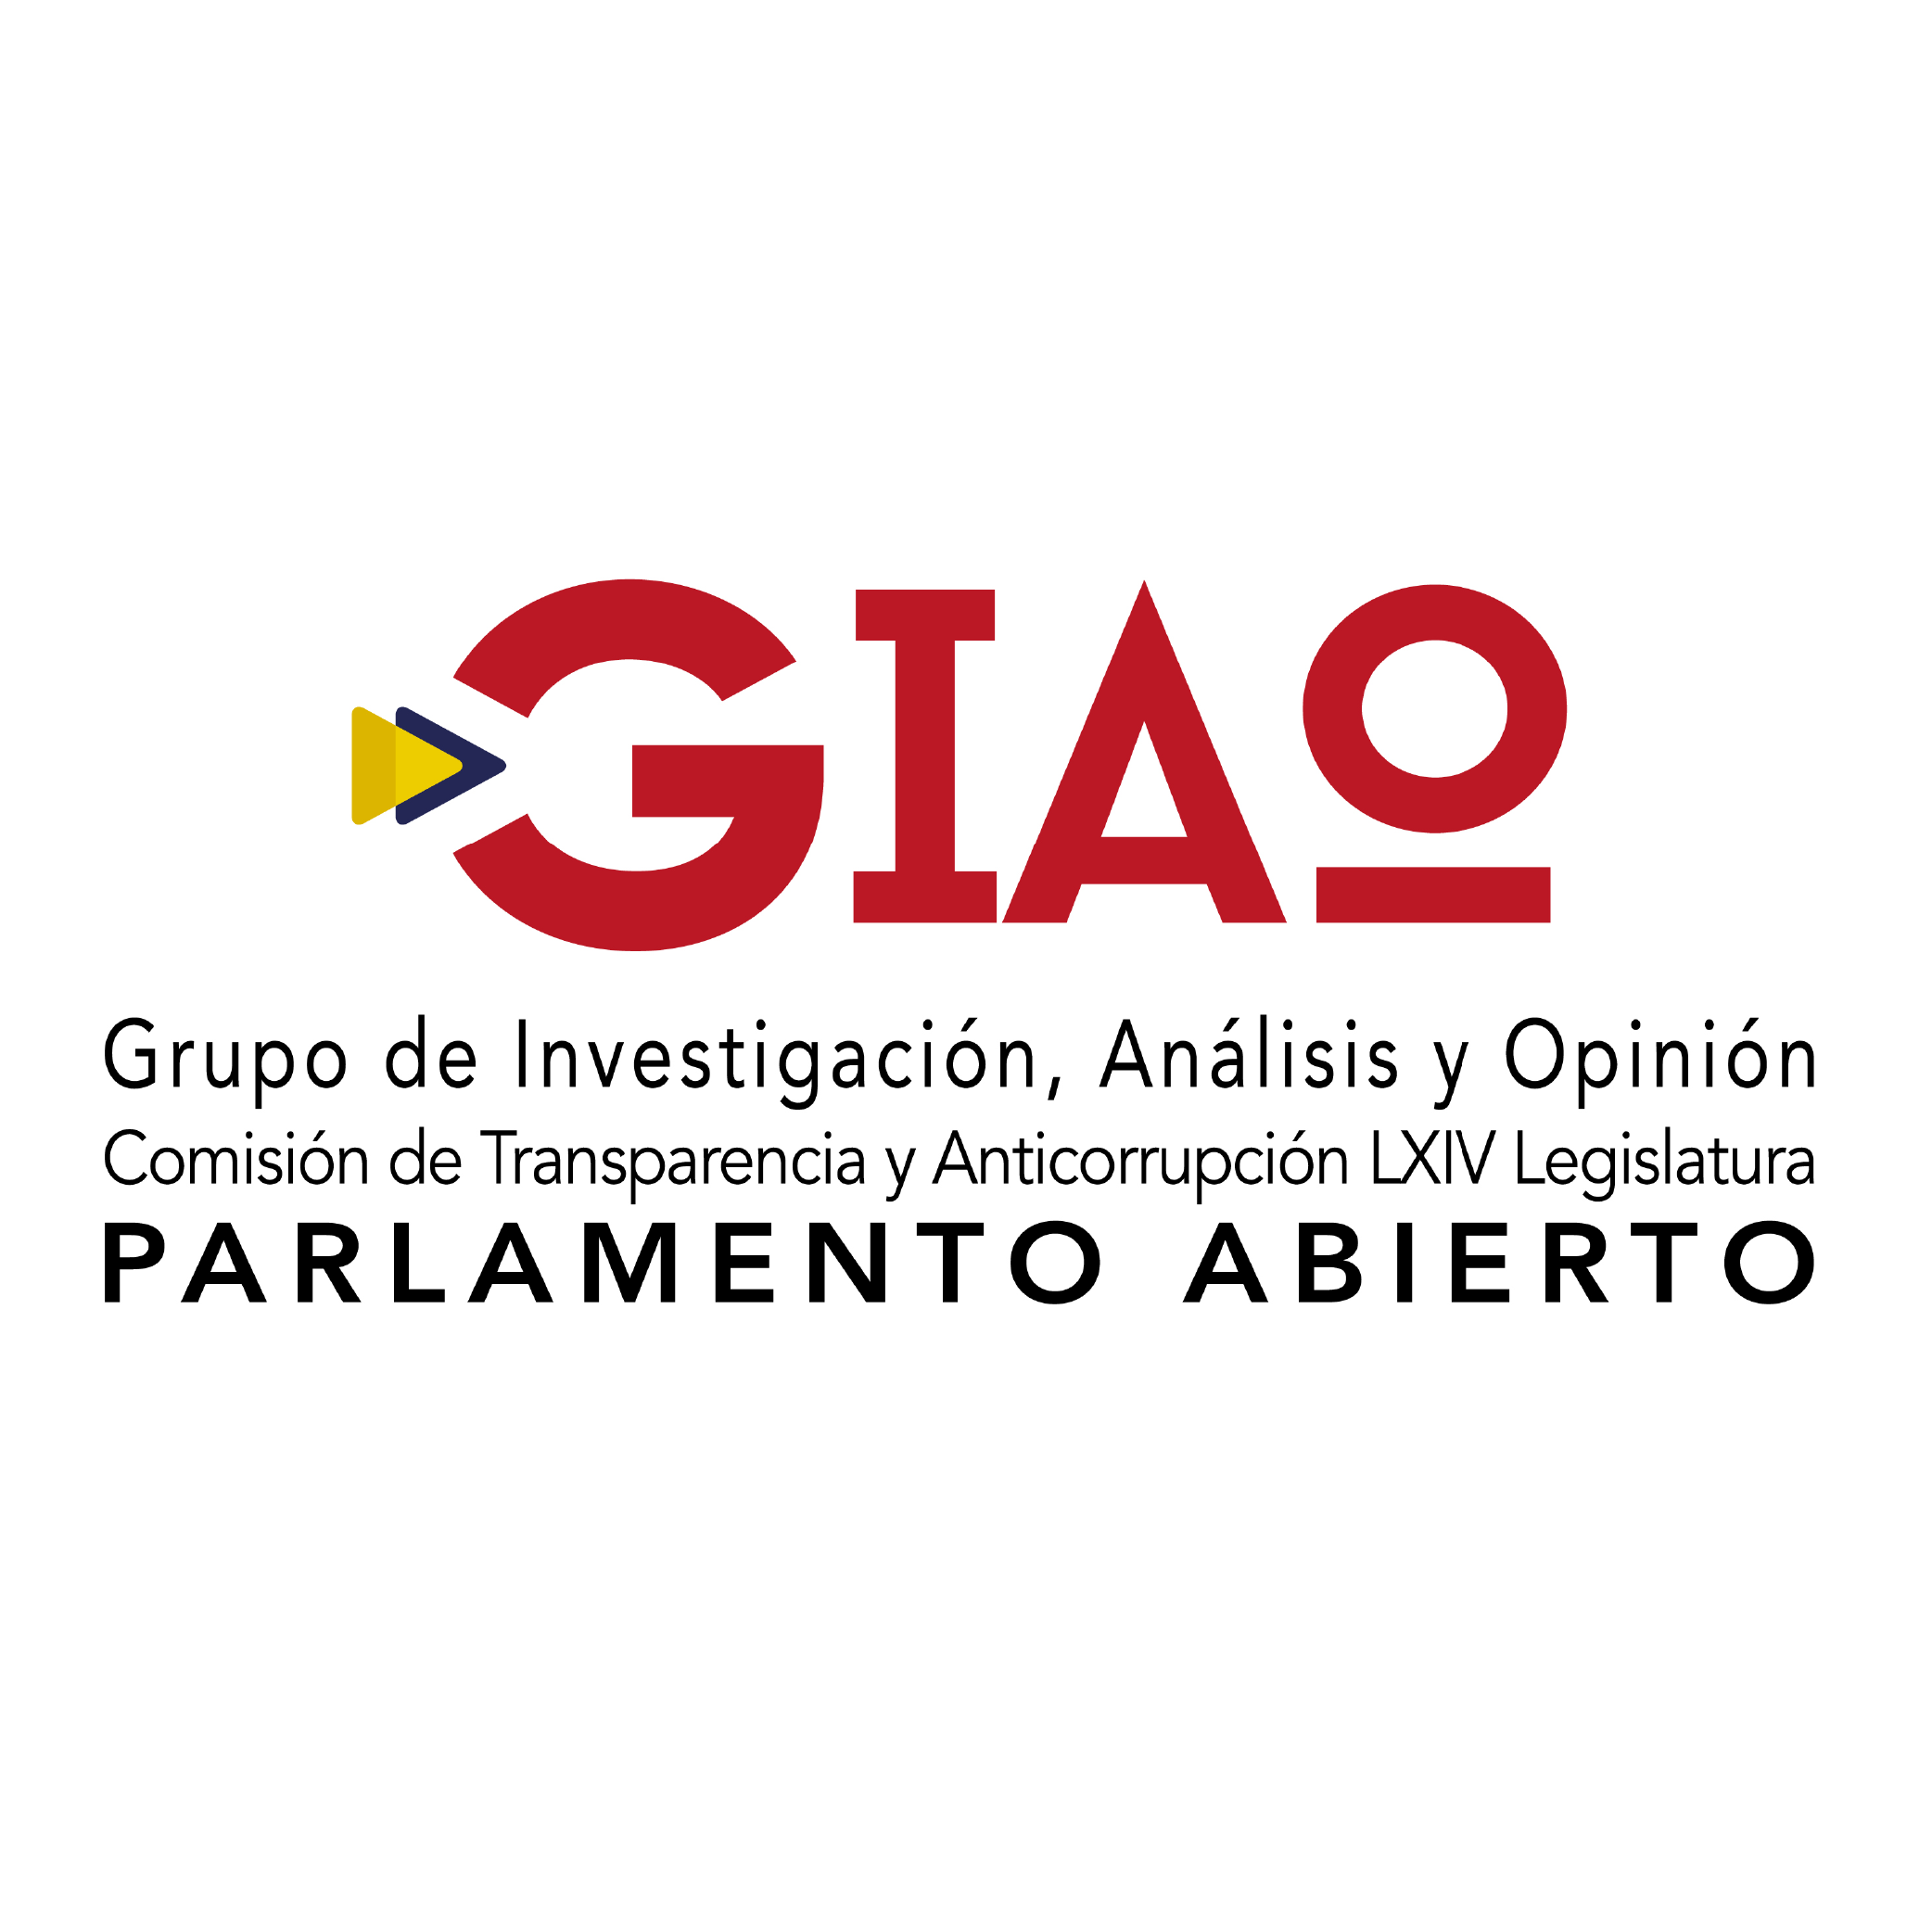 Grupo de Investigación, Análisis y Opinión Comisión de Transparencia y Anticorrupci&pacute;n LXIV Legislatura